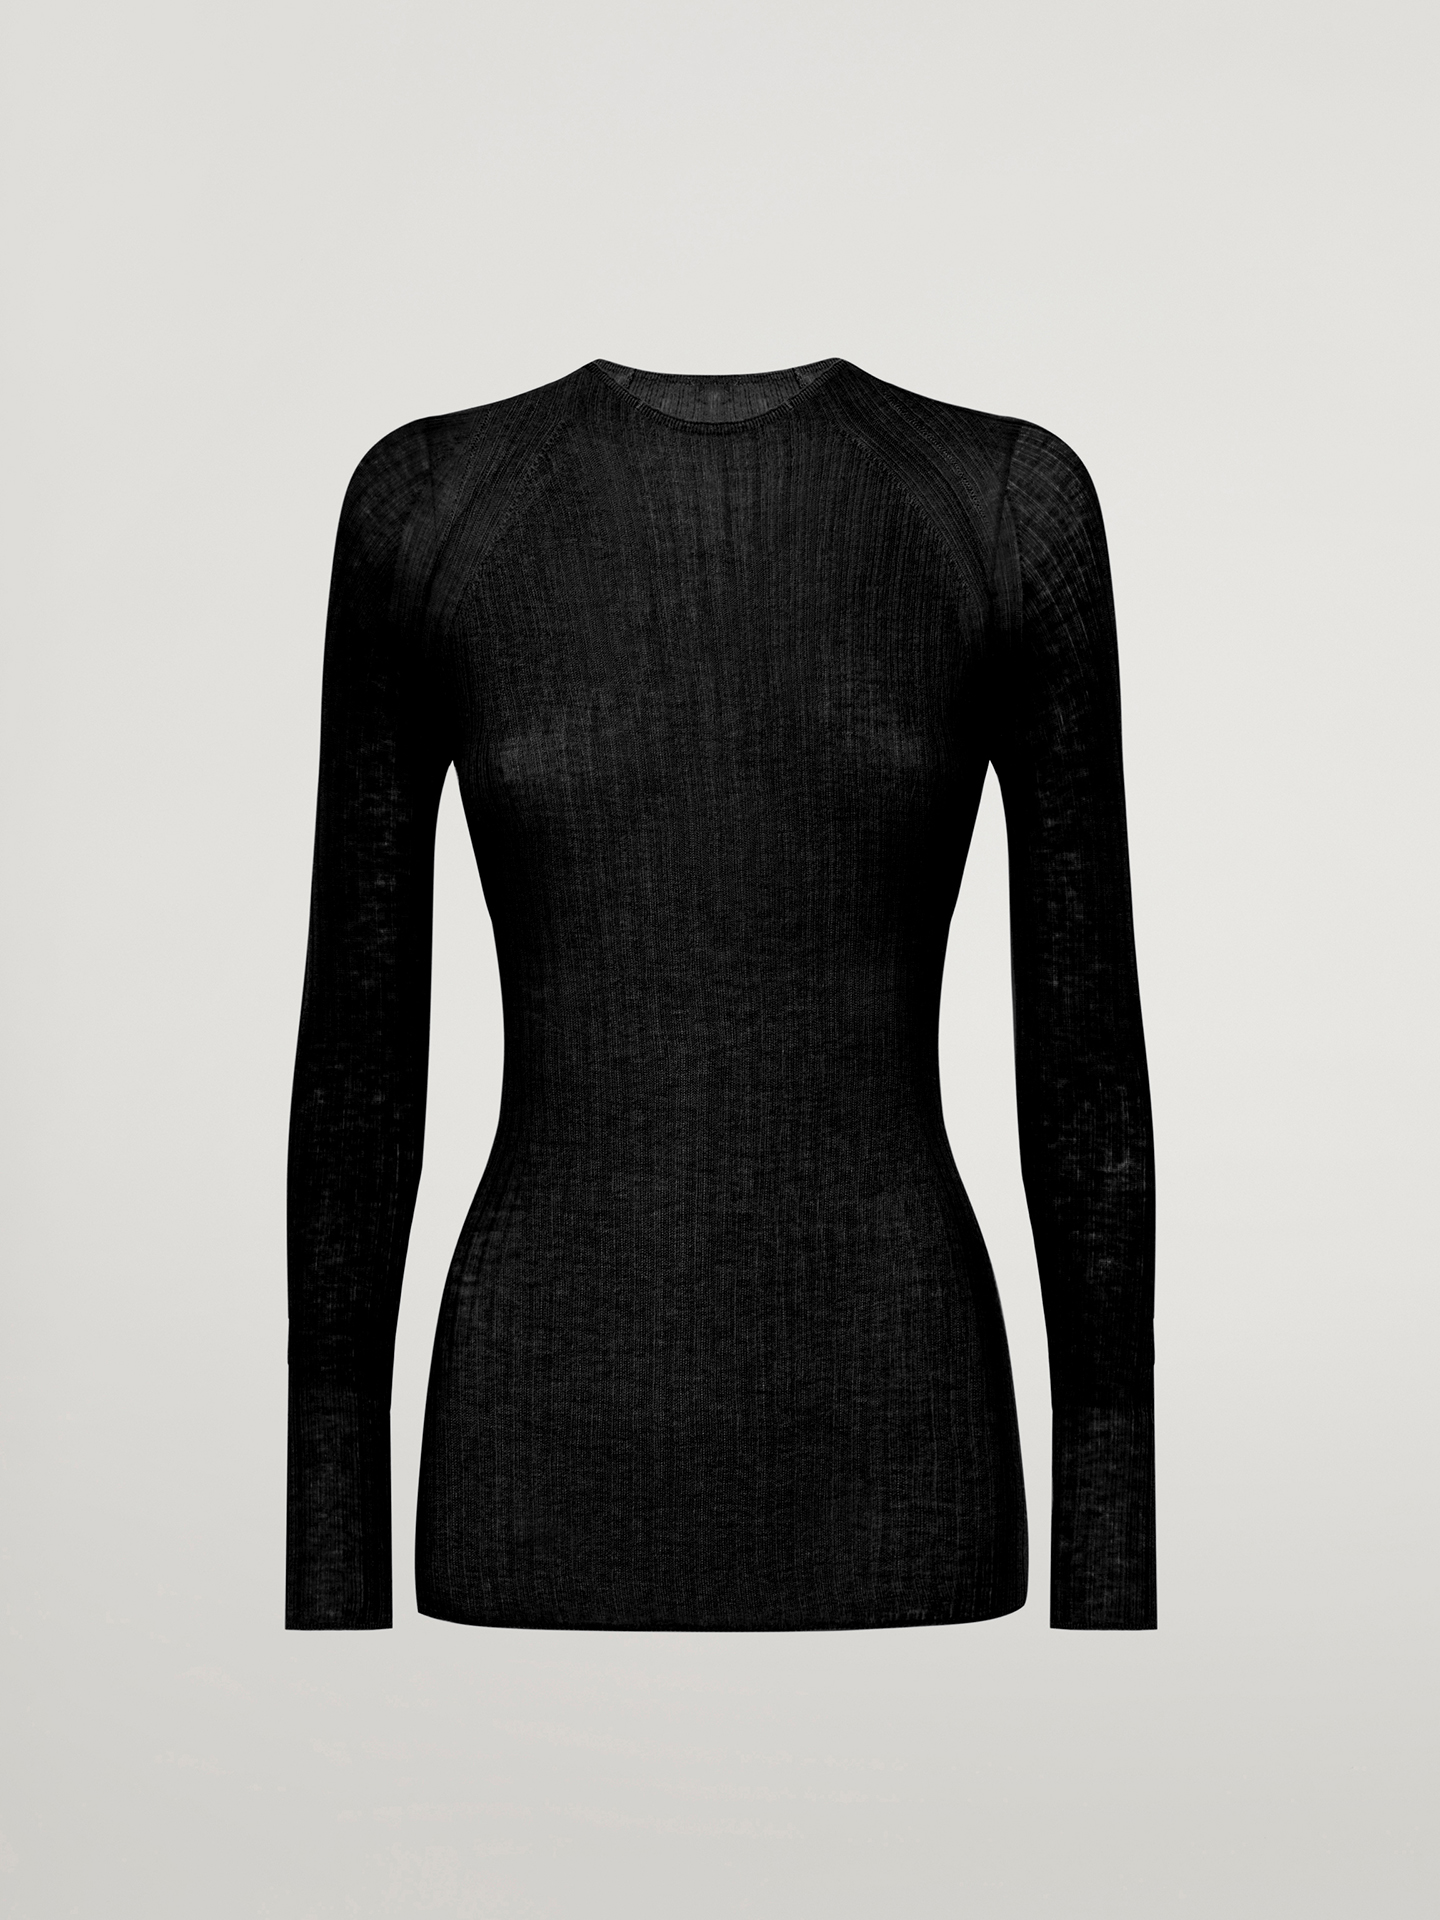 Wolford - Air Wool Top Long Sleeves, Frau, black, Größe: S von Wolford